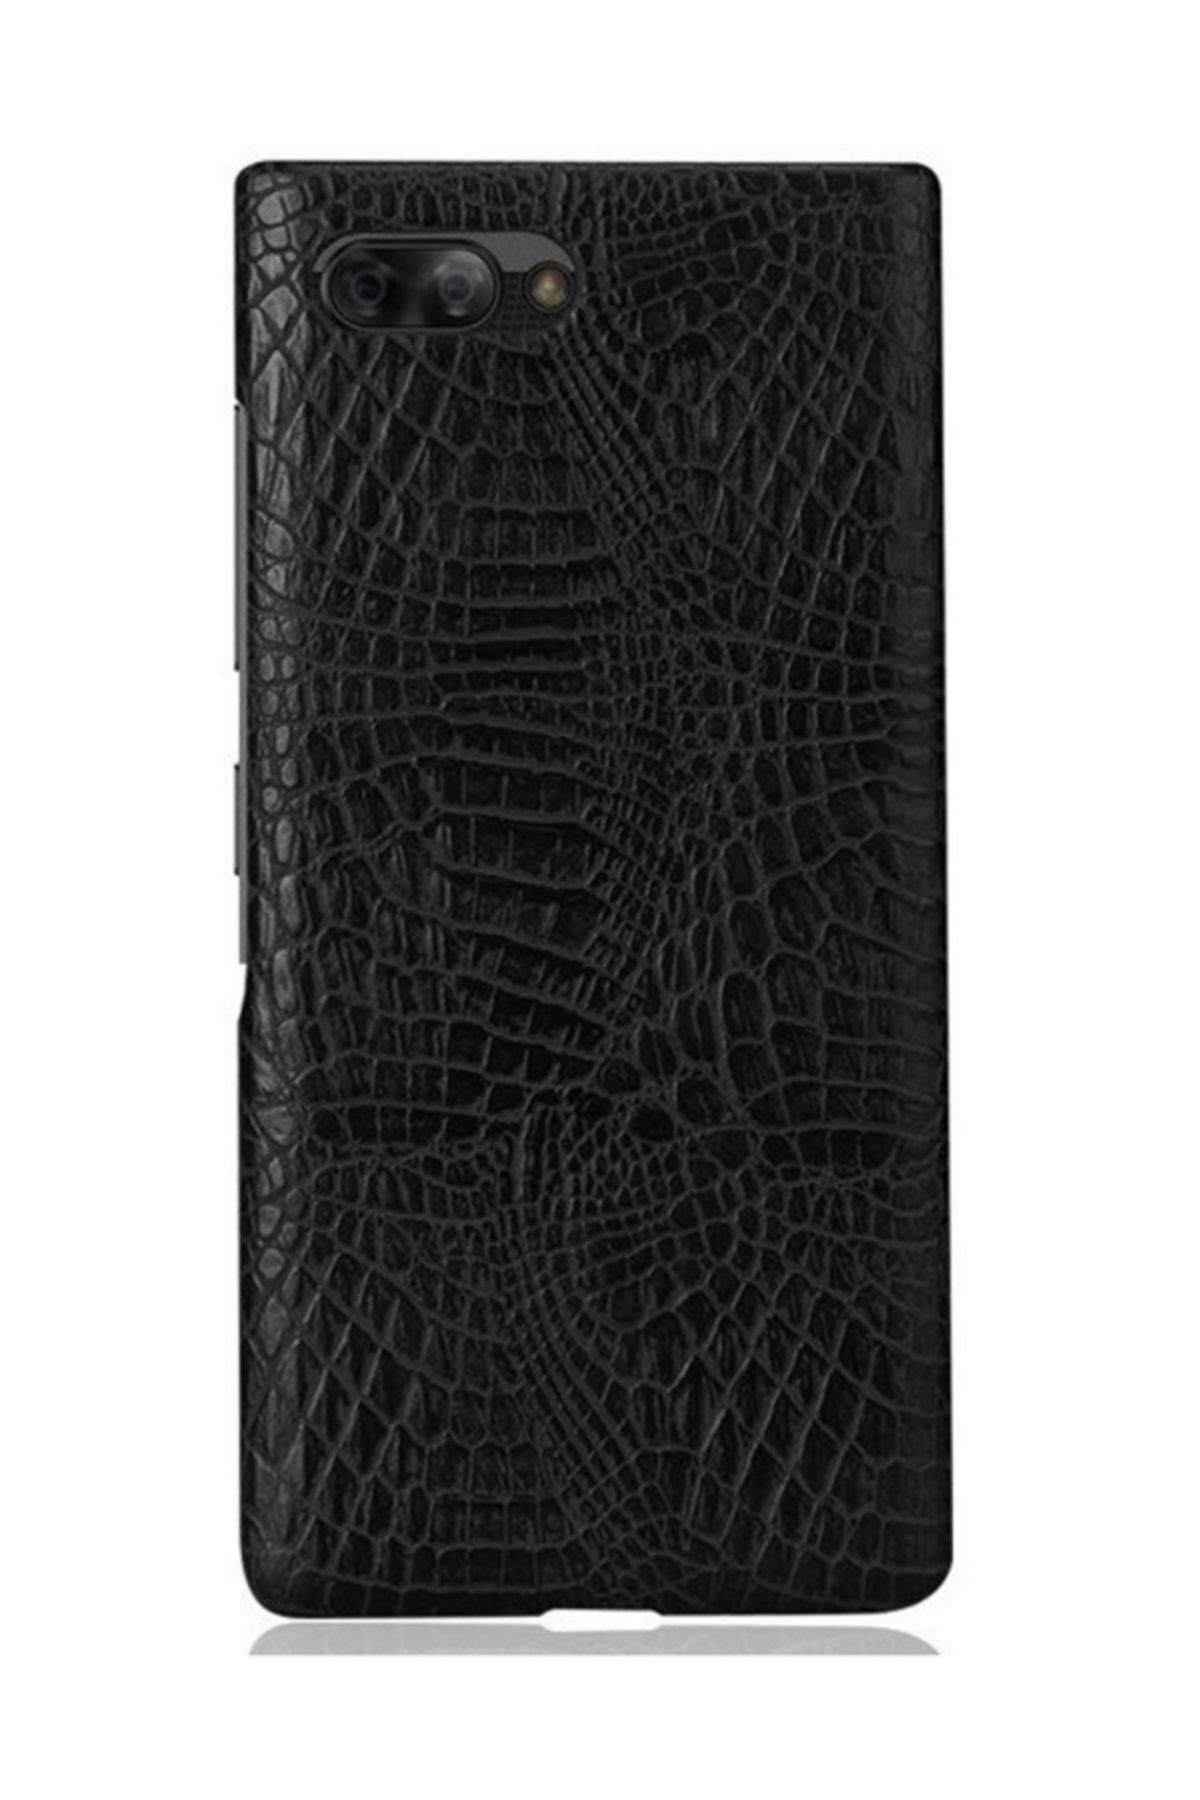 Microcase Blackberry Key2 Le (light) Crocodile Timsah Deri Kaplama Sert Rubber Kılıf - Siyah